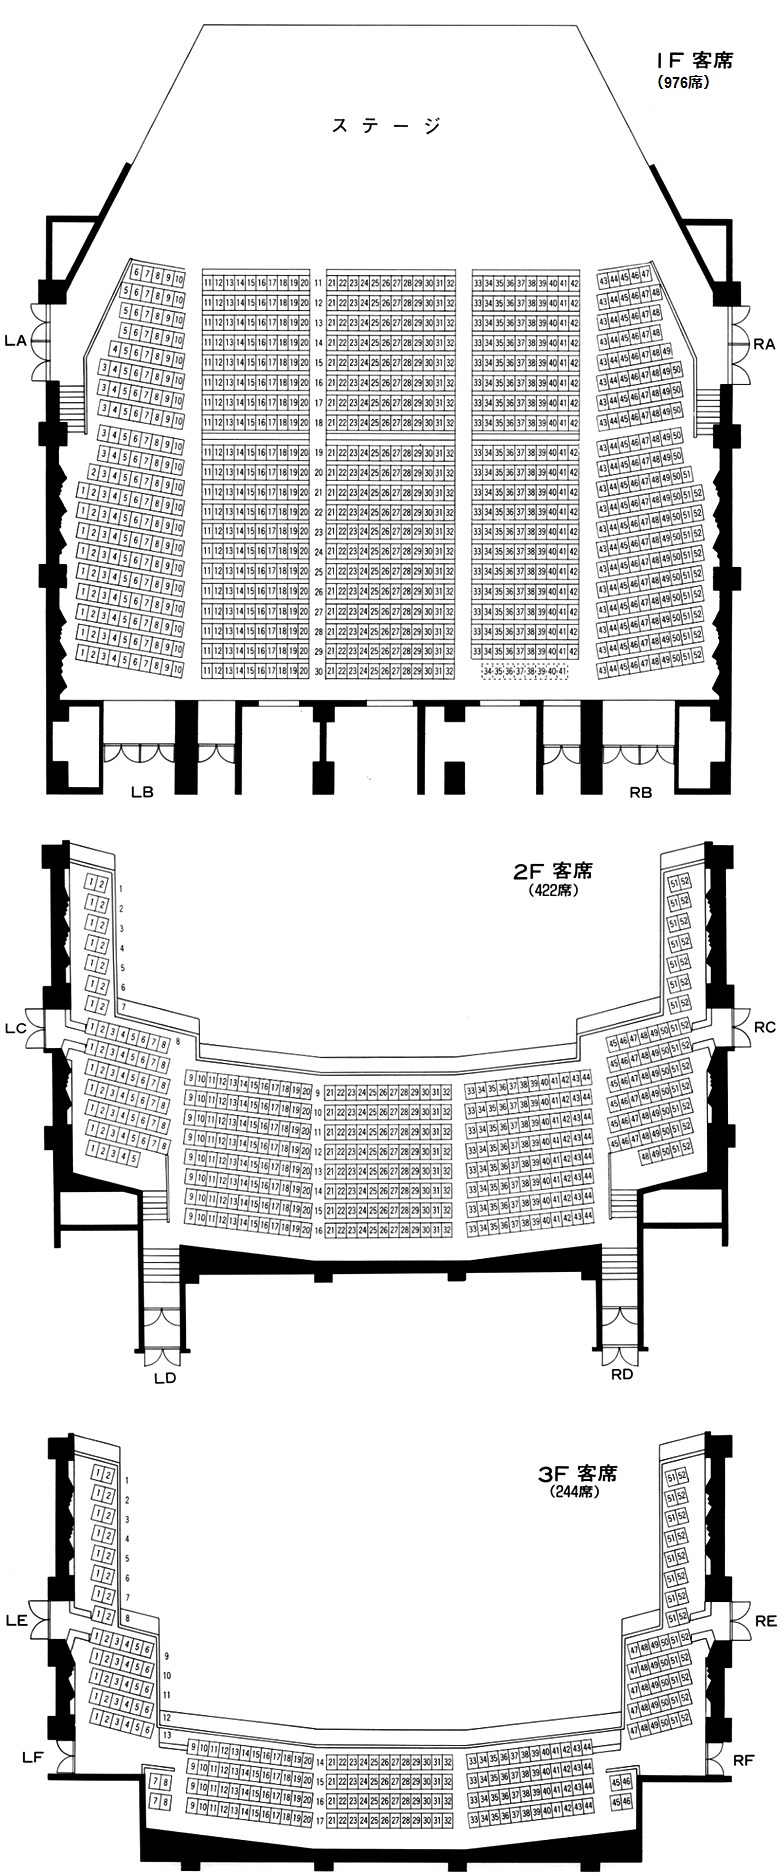 メインホールの座席表・ワンルーム型エプロンステージ